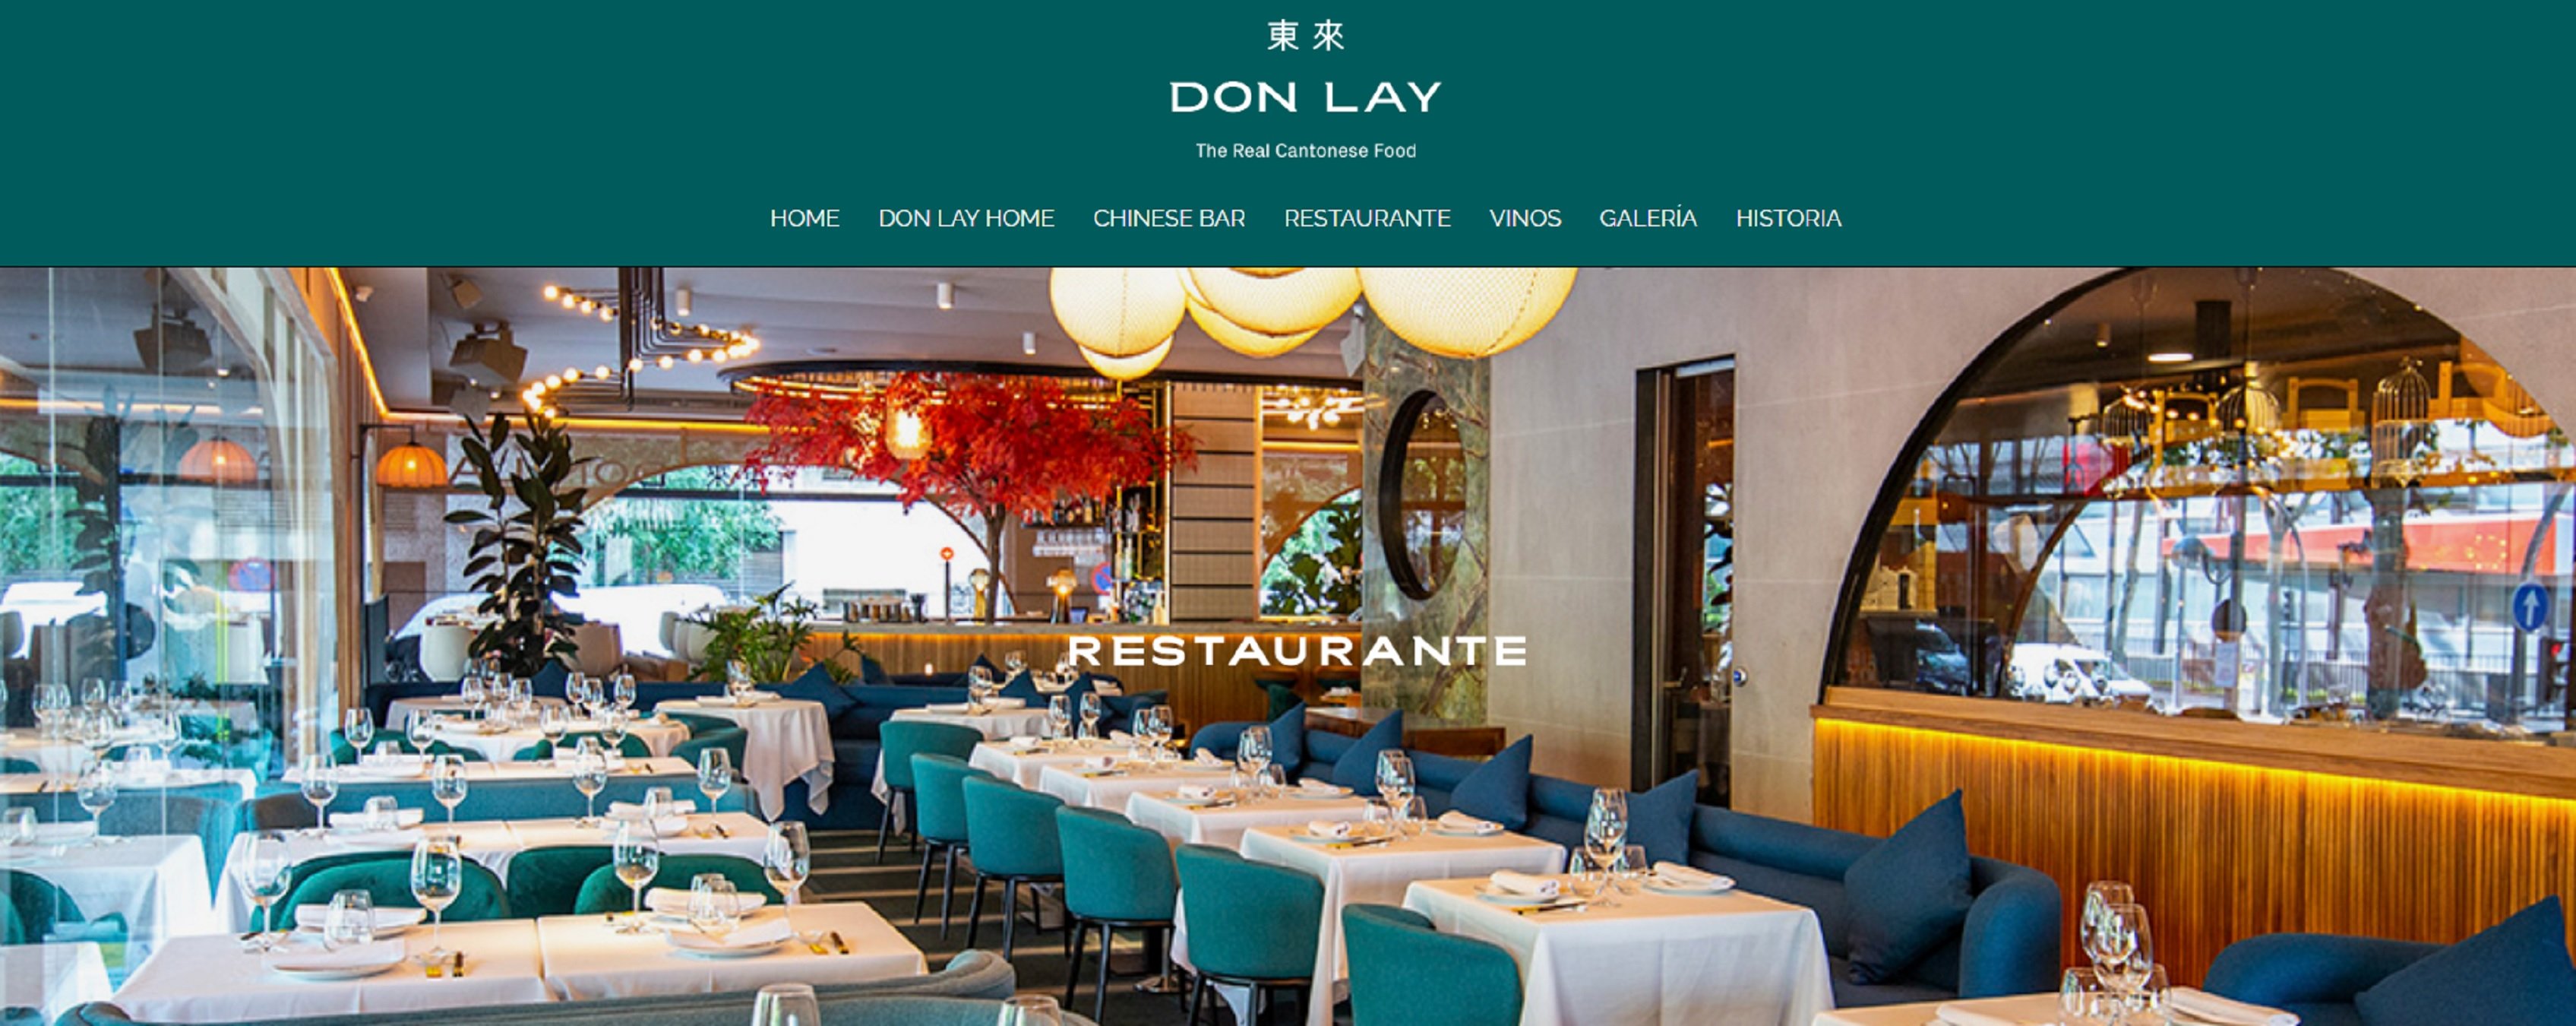 Restaurante Don Lay   Web